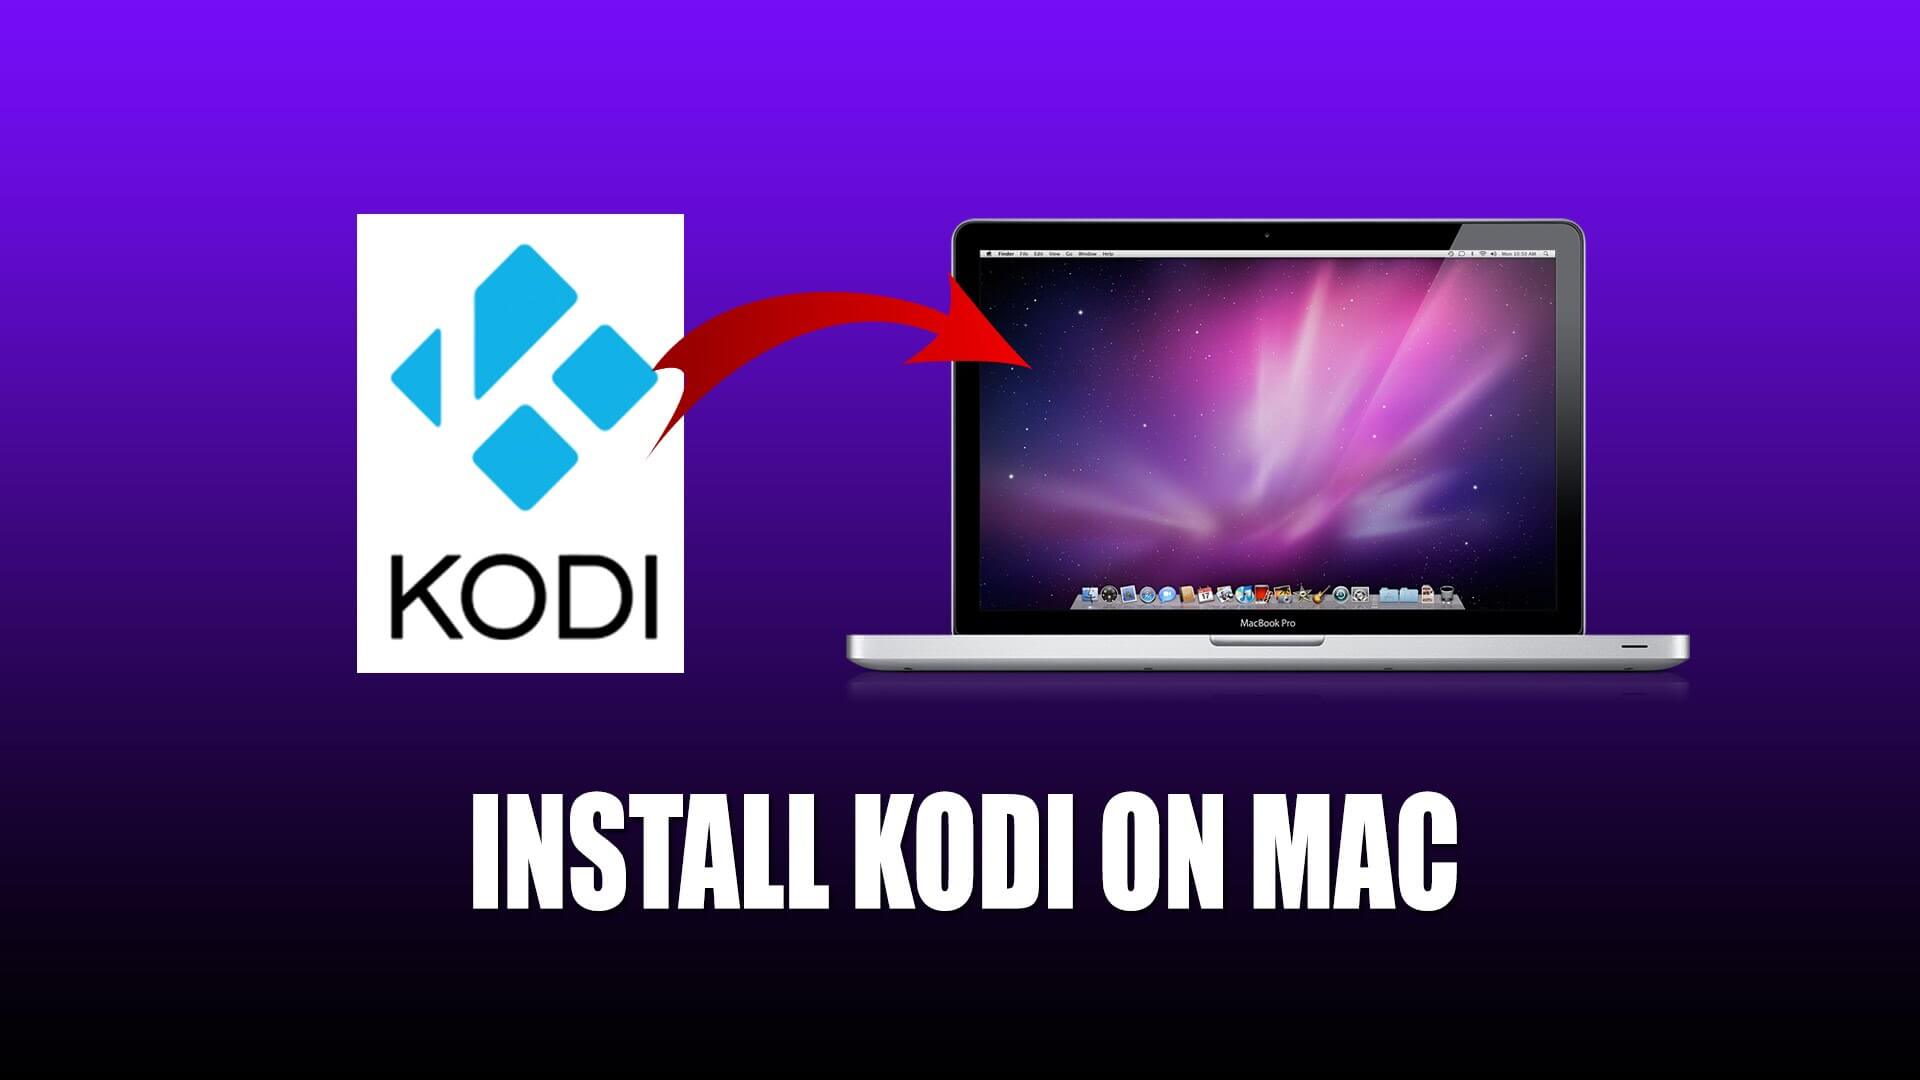 Kodi for macbook 2018